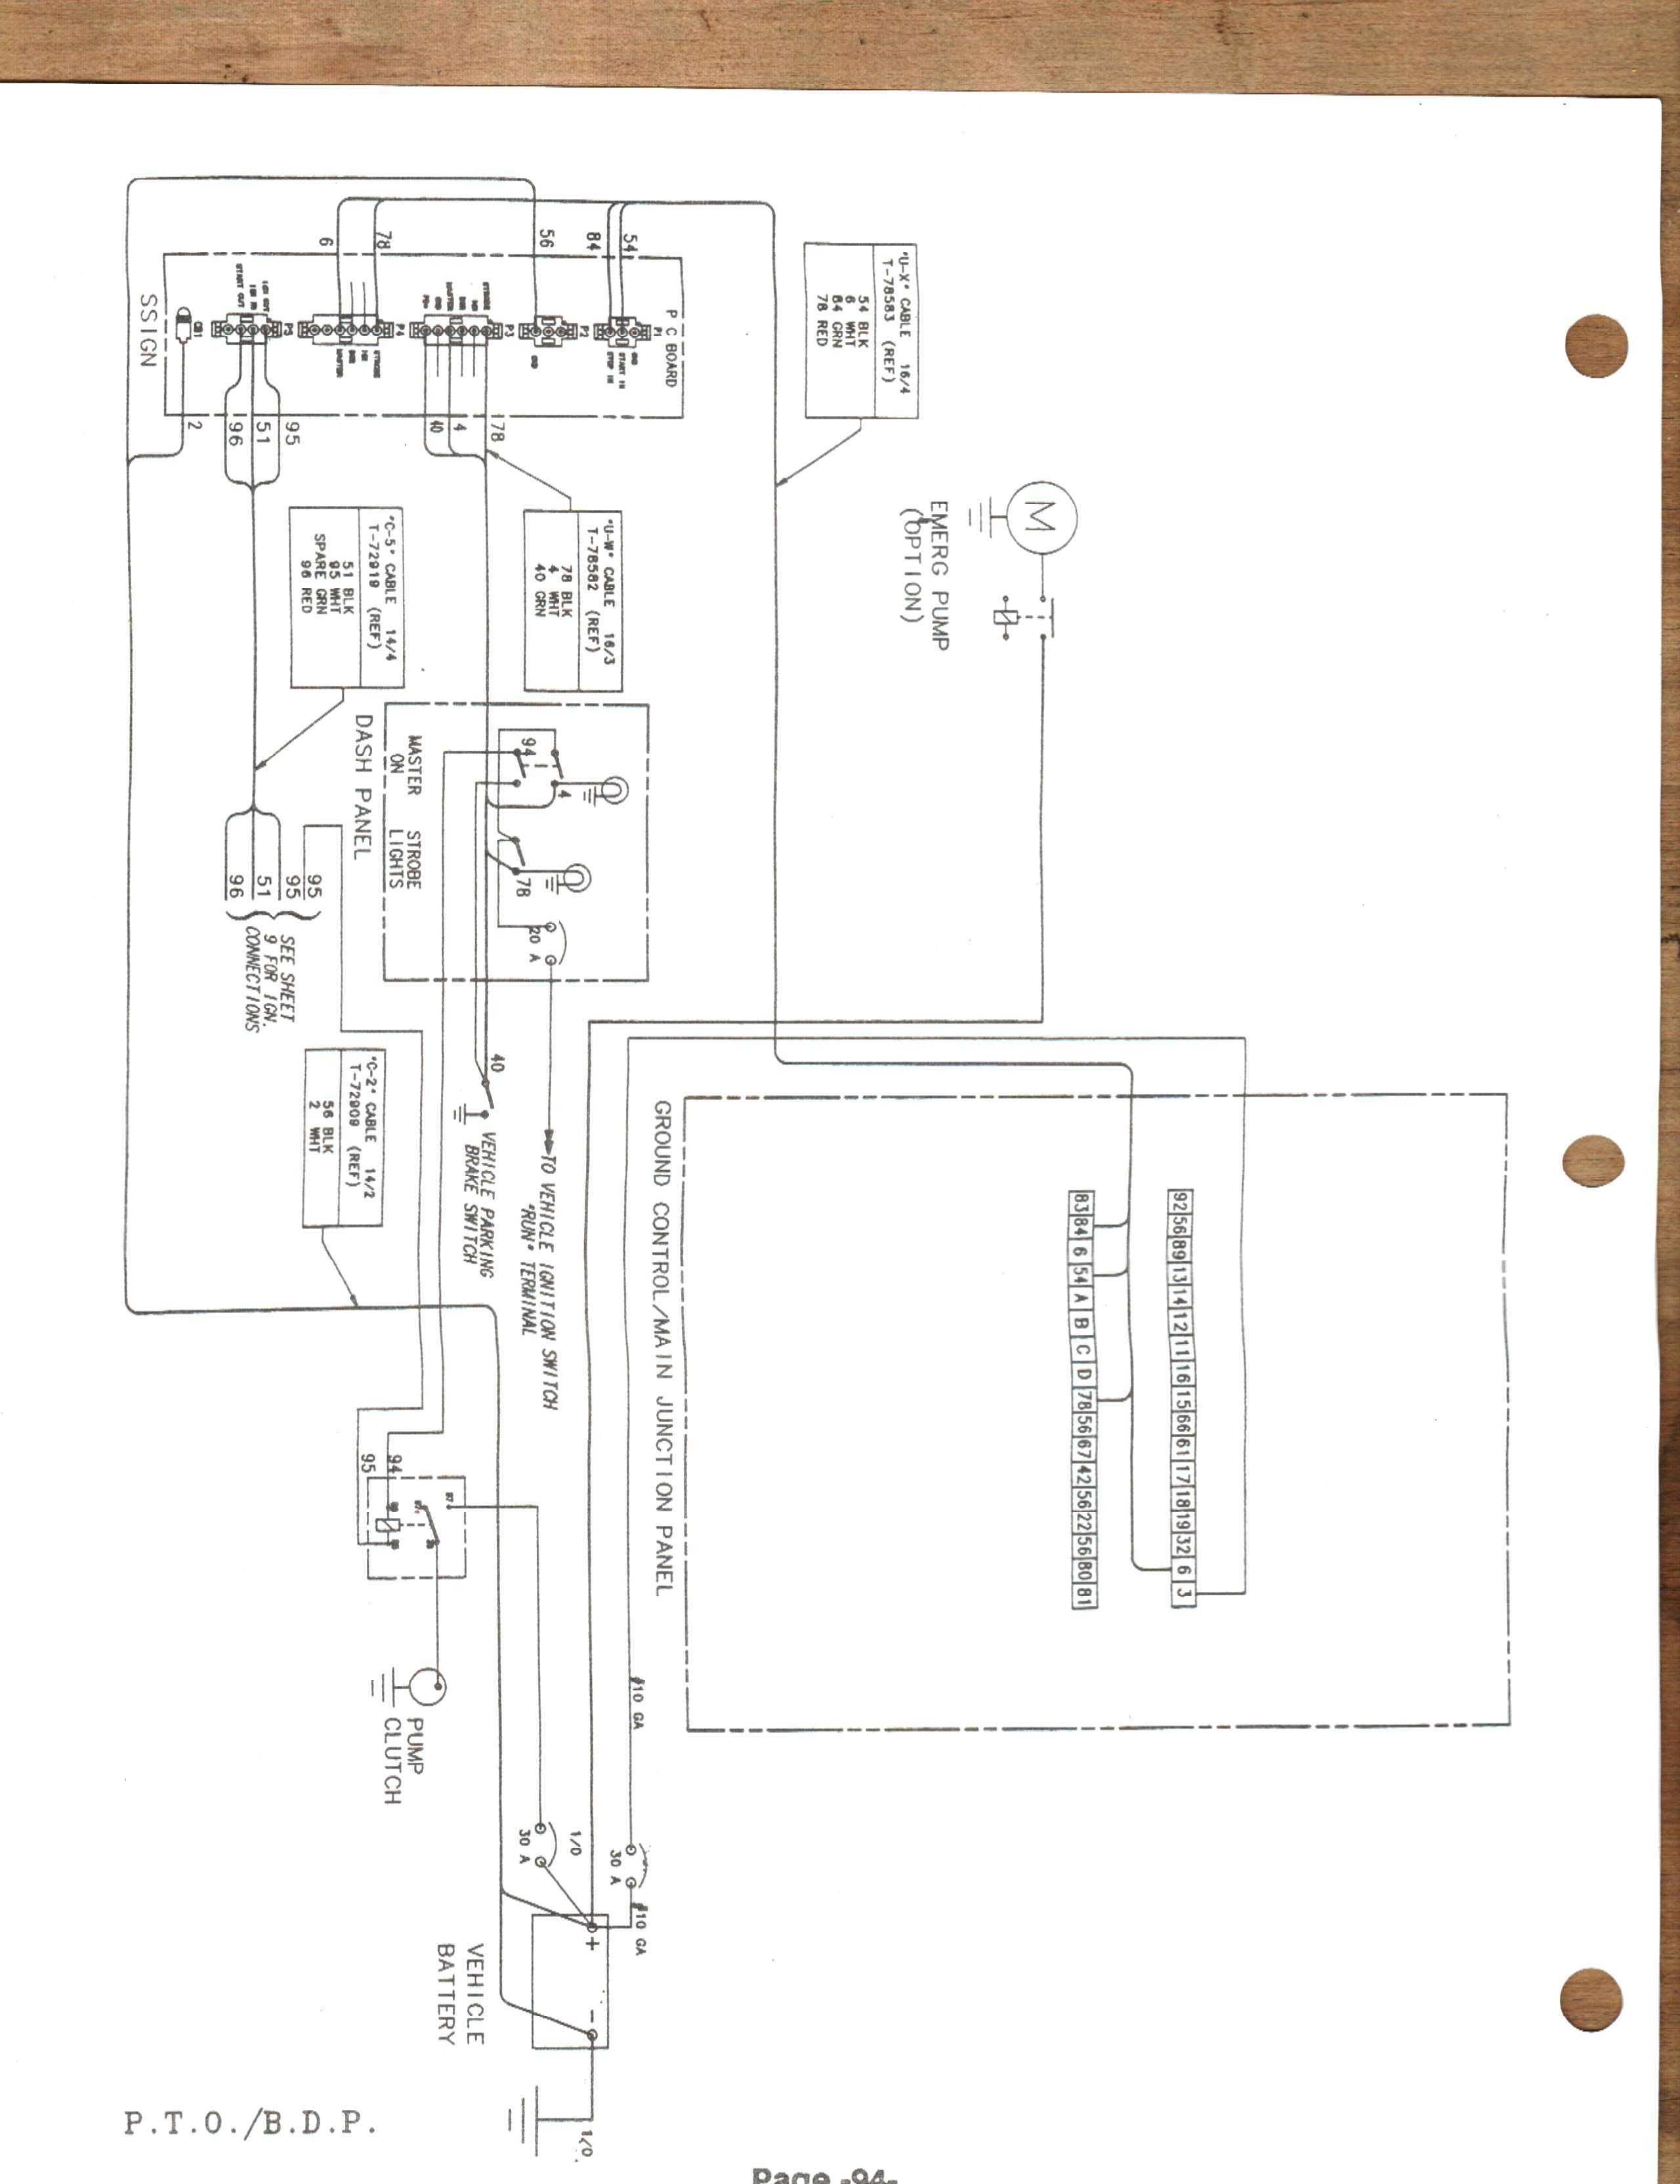 Diagram Telsta T40c Wiring Diagram Full Version Hd Quality Wiring Diagram Umlusecasediagram Dominique Tiberi Fr